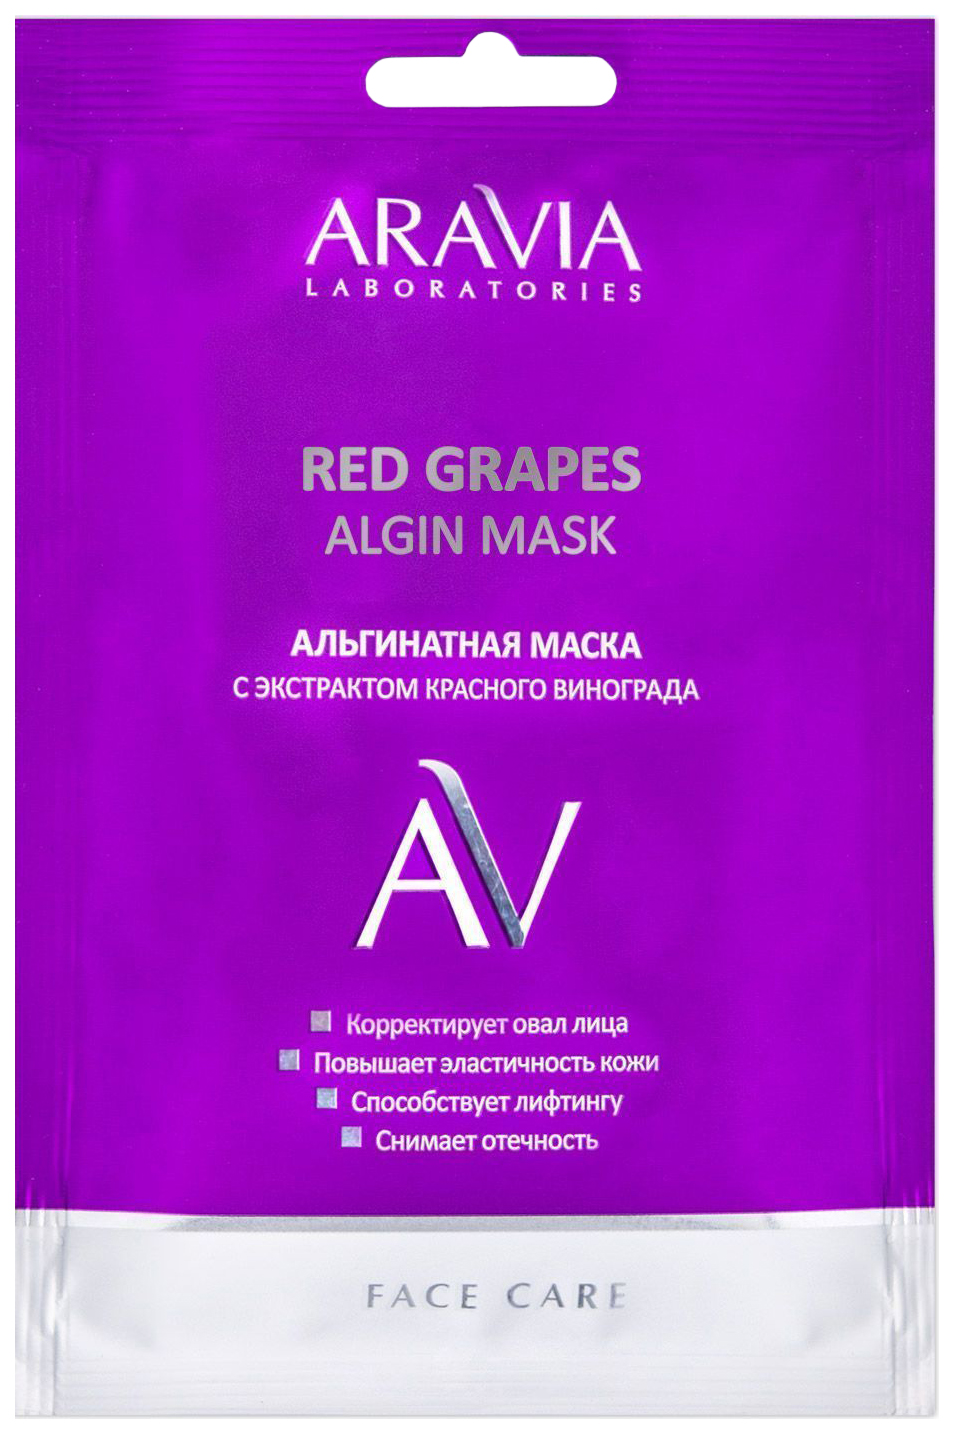 Маска для лица Aravia Professional Red Grapes Algin Mask 30 г aravia laboratories альгинатная маска с экстрактом красного винограда red grapes algin mask